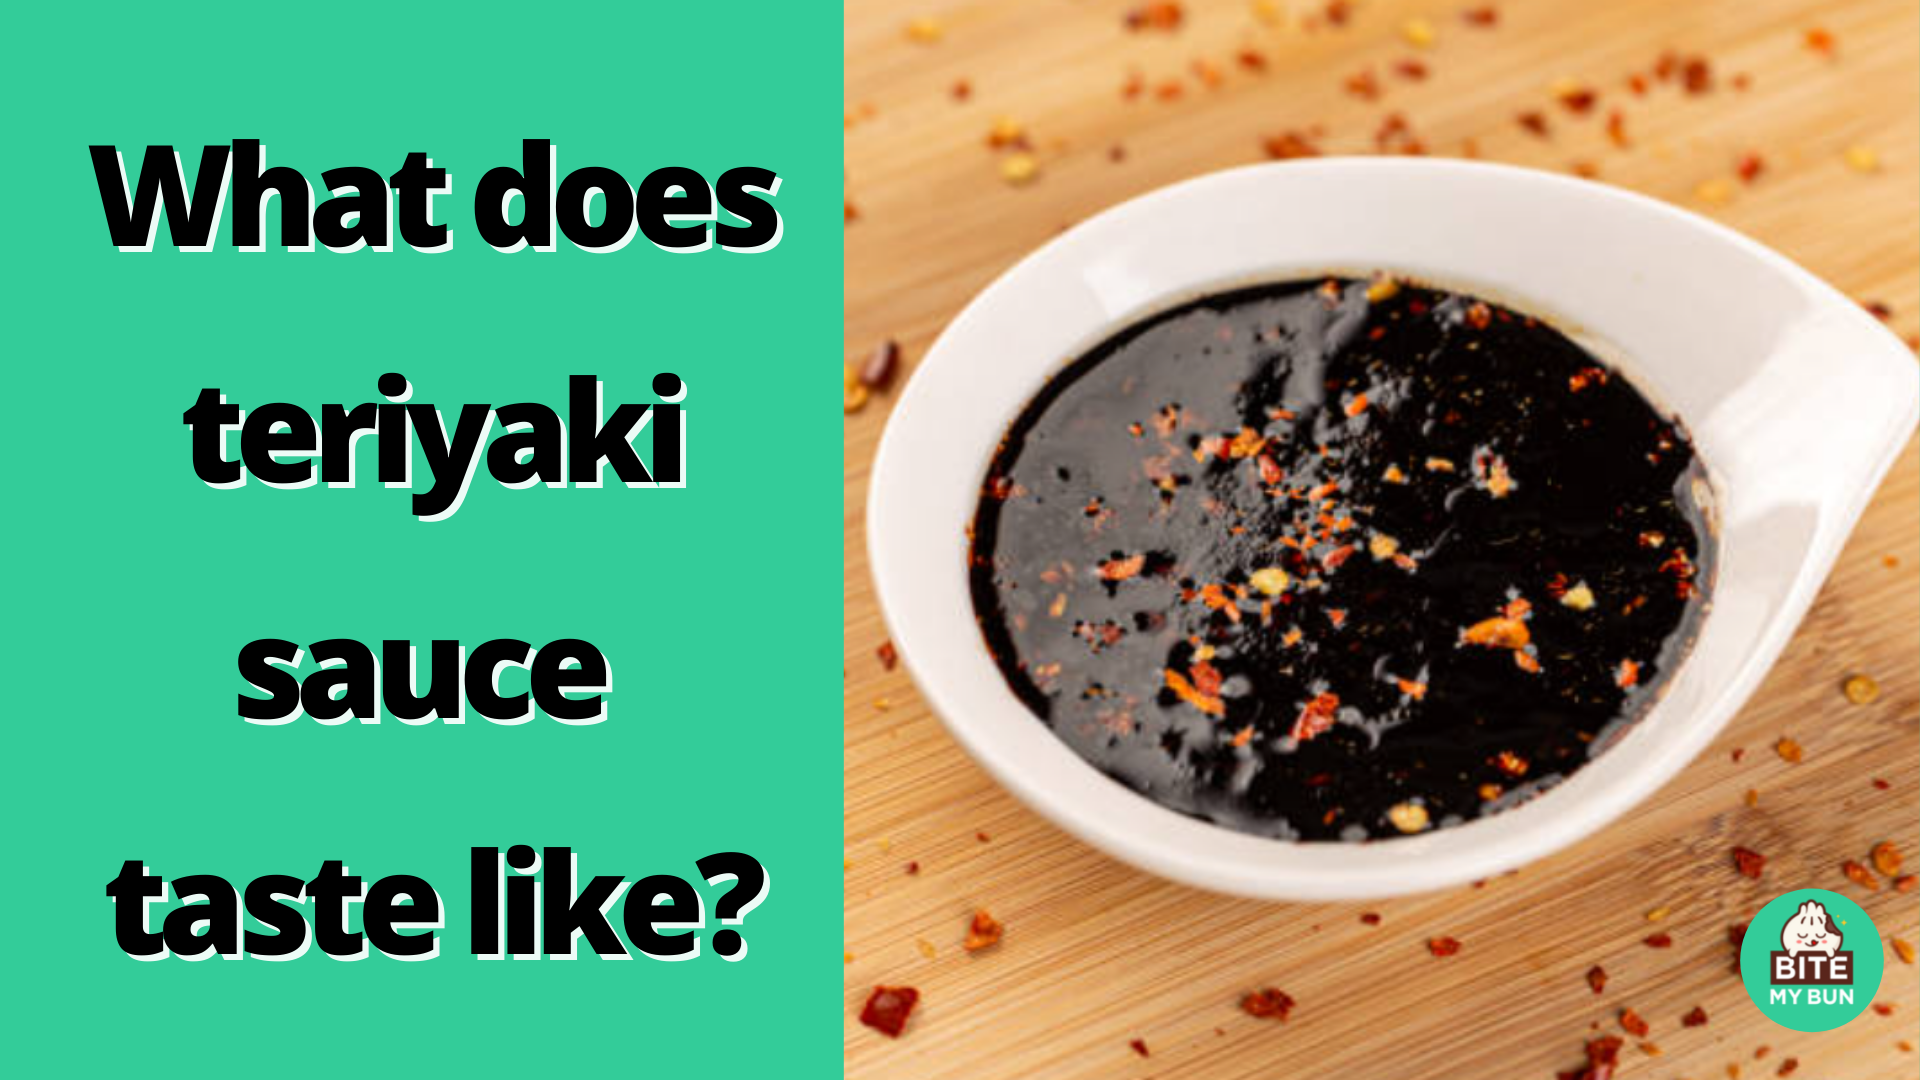 ¿A qué sabe la salsa teriyaki? Déjame describir el sabor